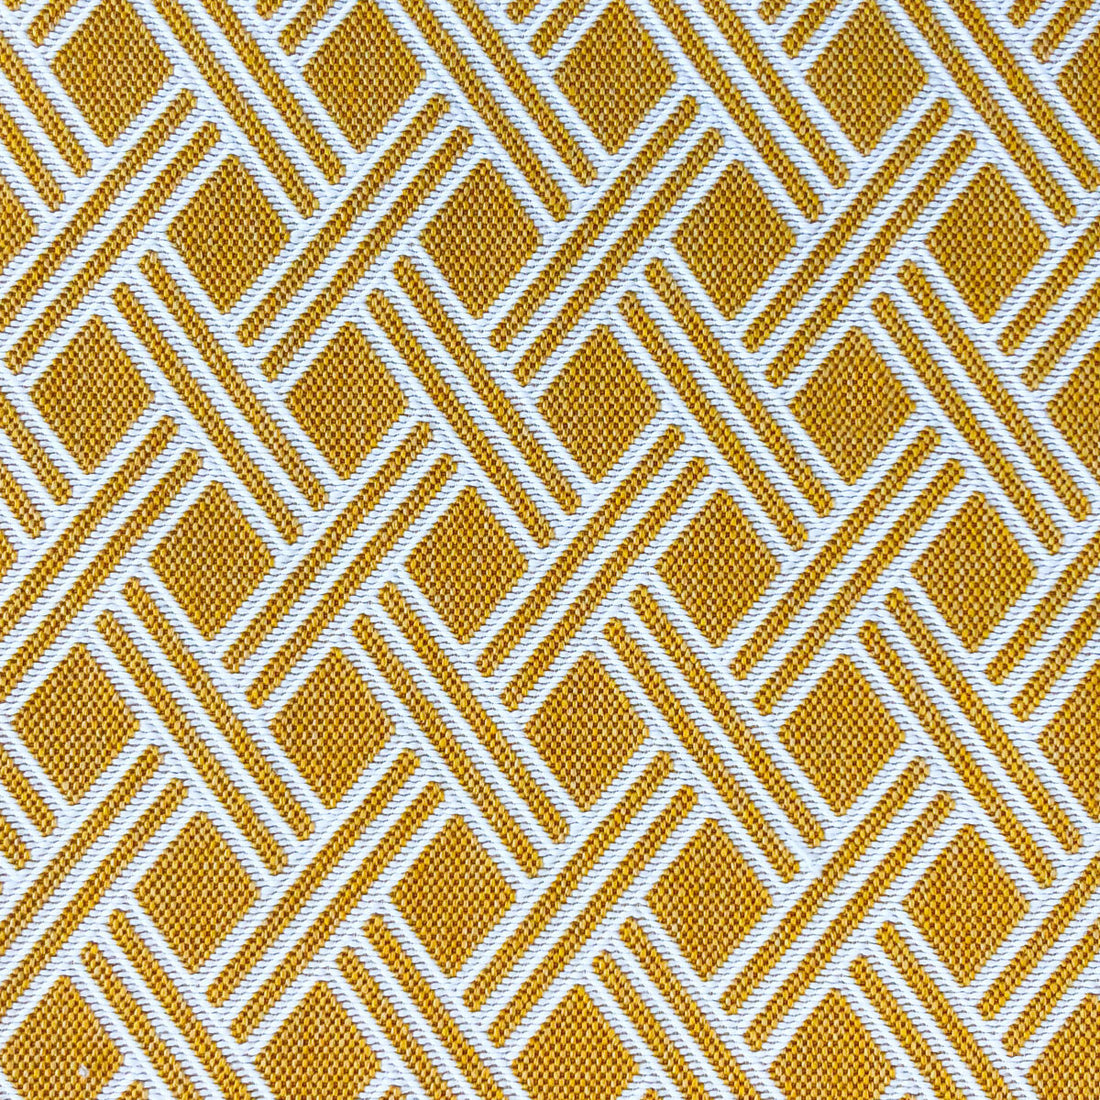 Dorcas fabric in amarillo color - pattern LCT1060.008.0 - by Gaston y Daniela in the Lorenzo Castillo VI collection